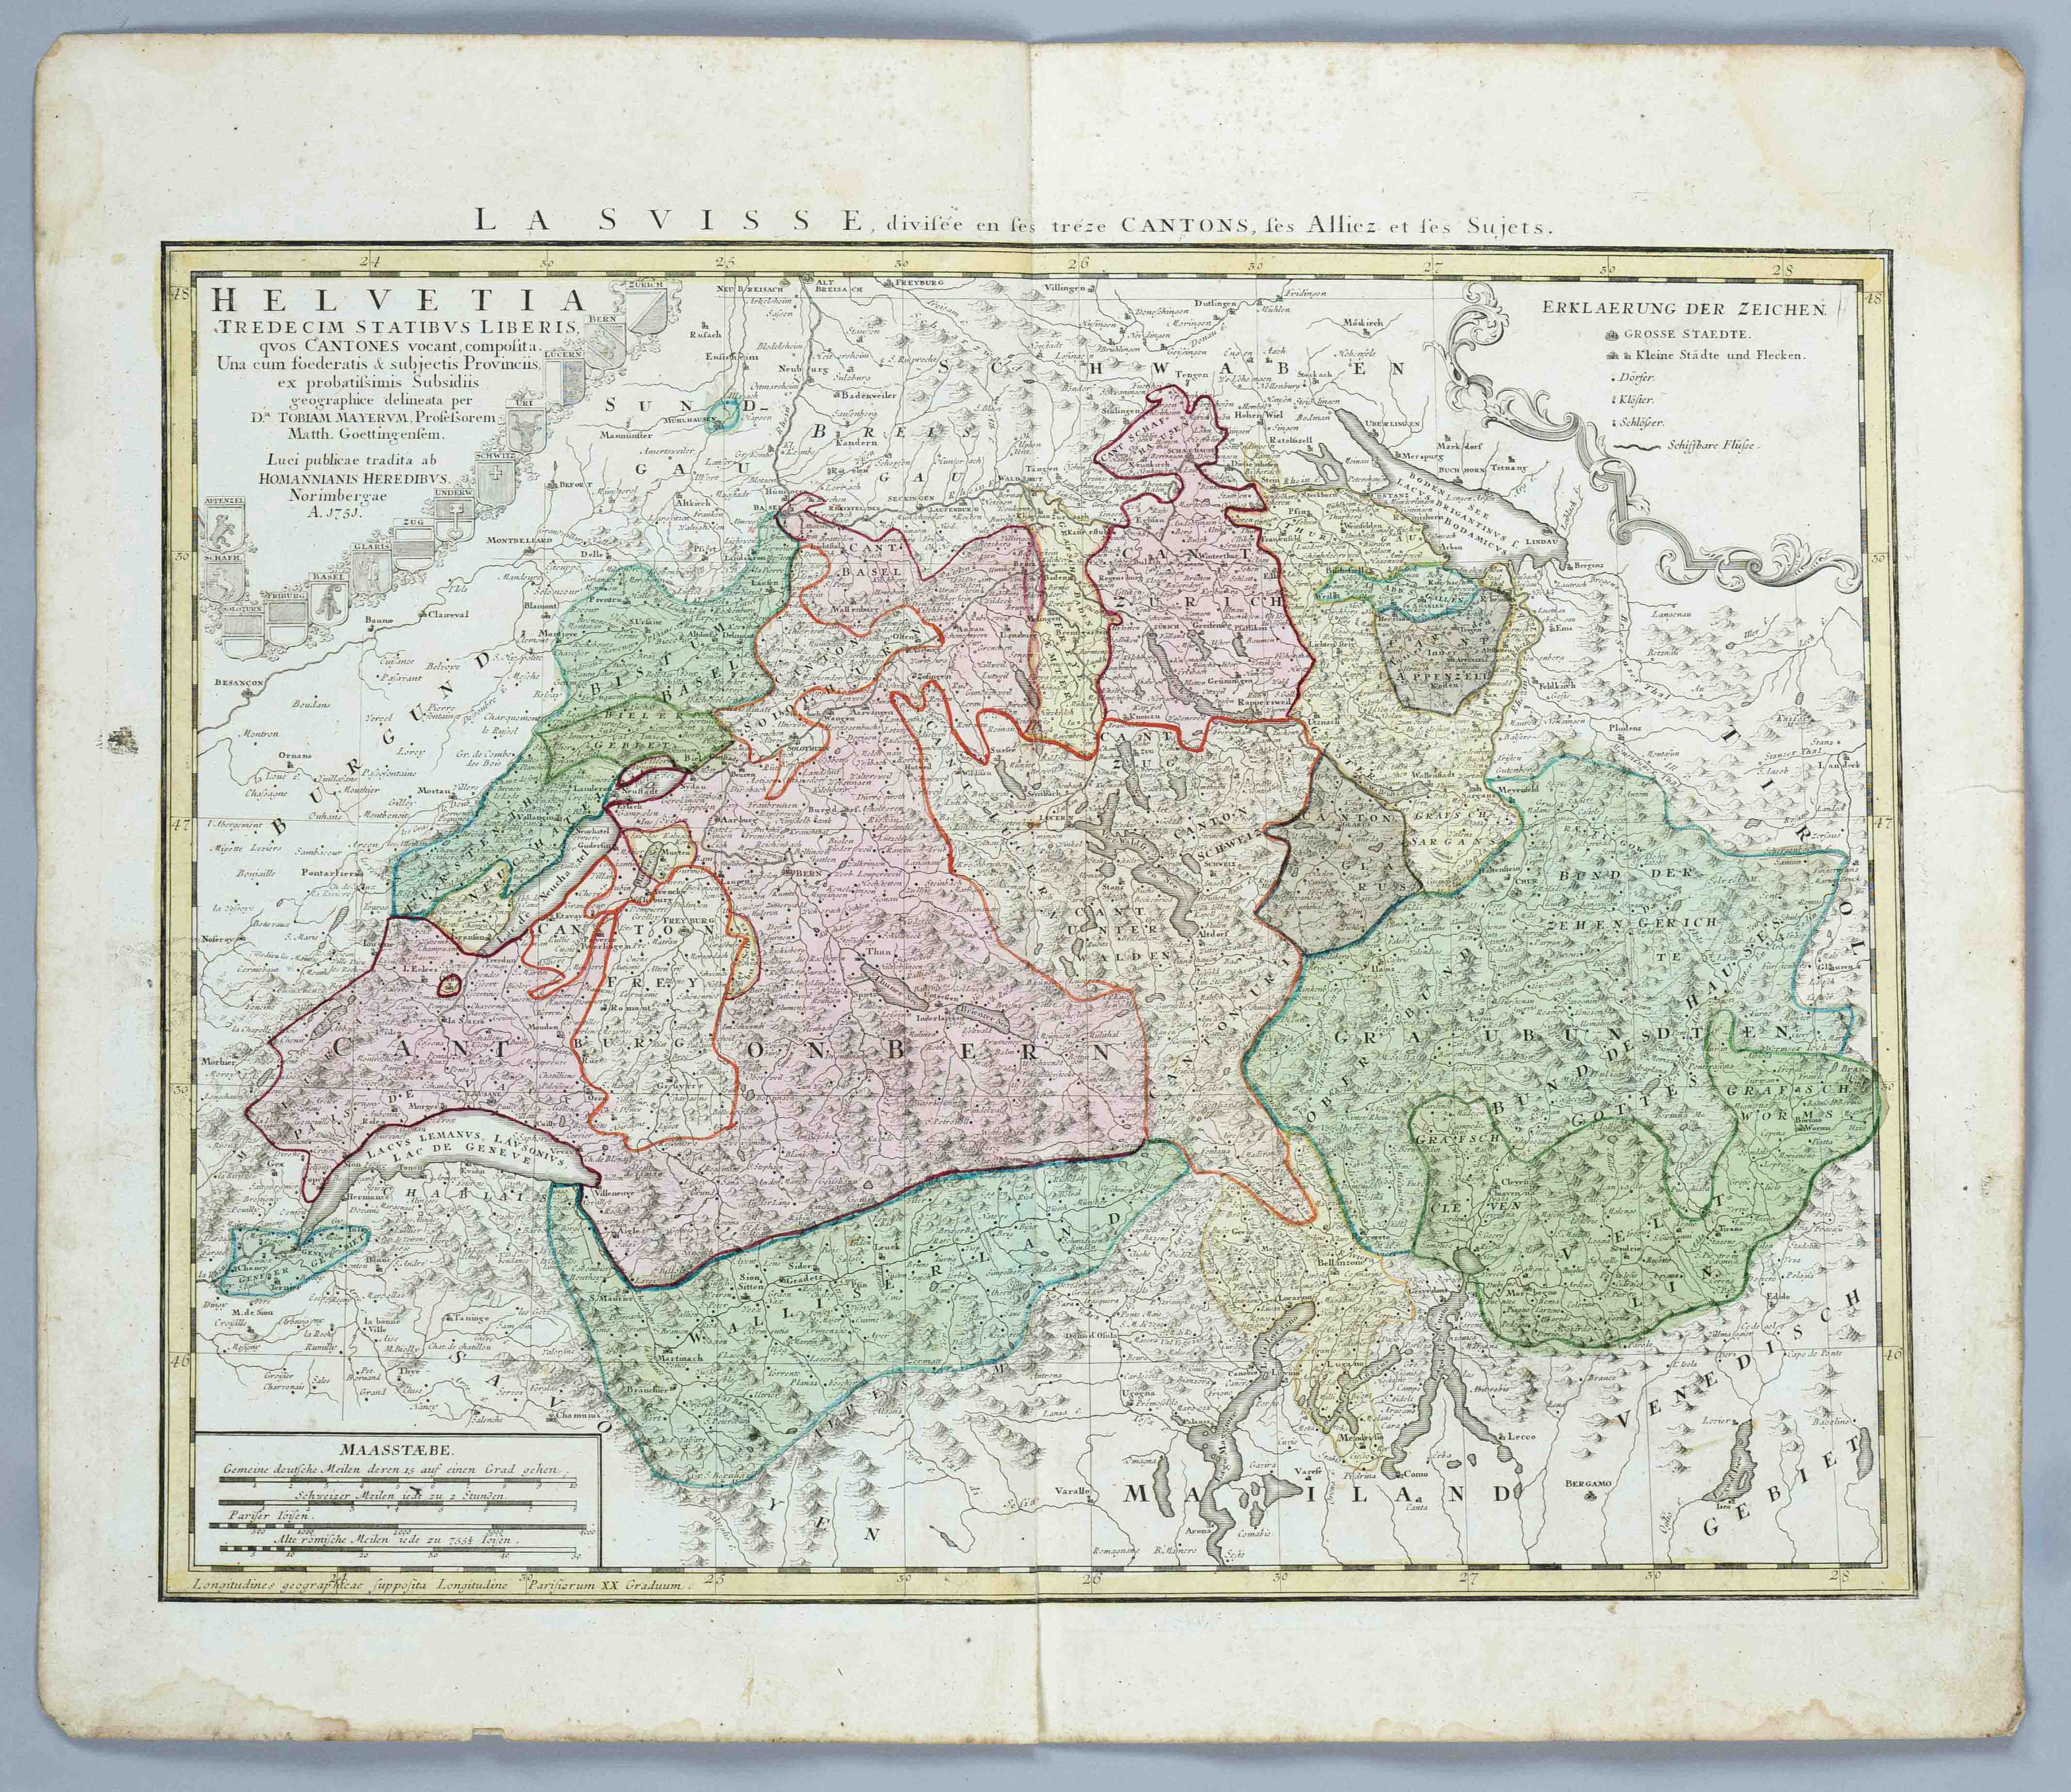 Historical map of Switzerland, ''Helvetia tredecim statibus liberis quos Cantones vocant